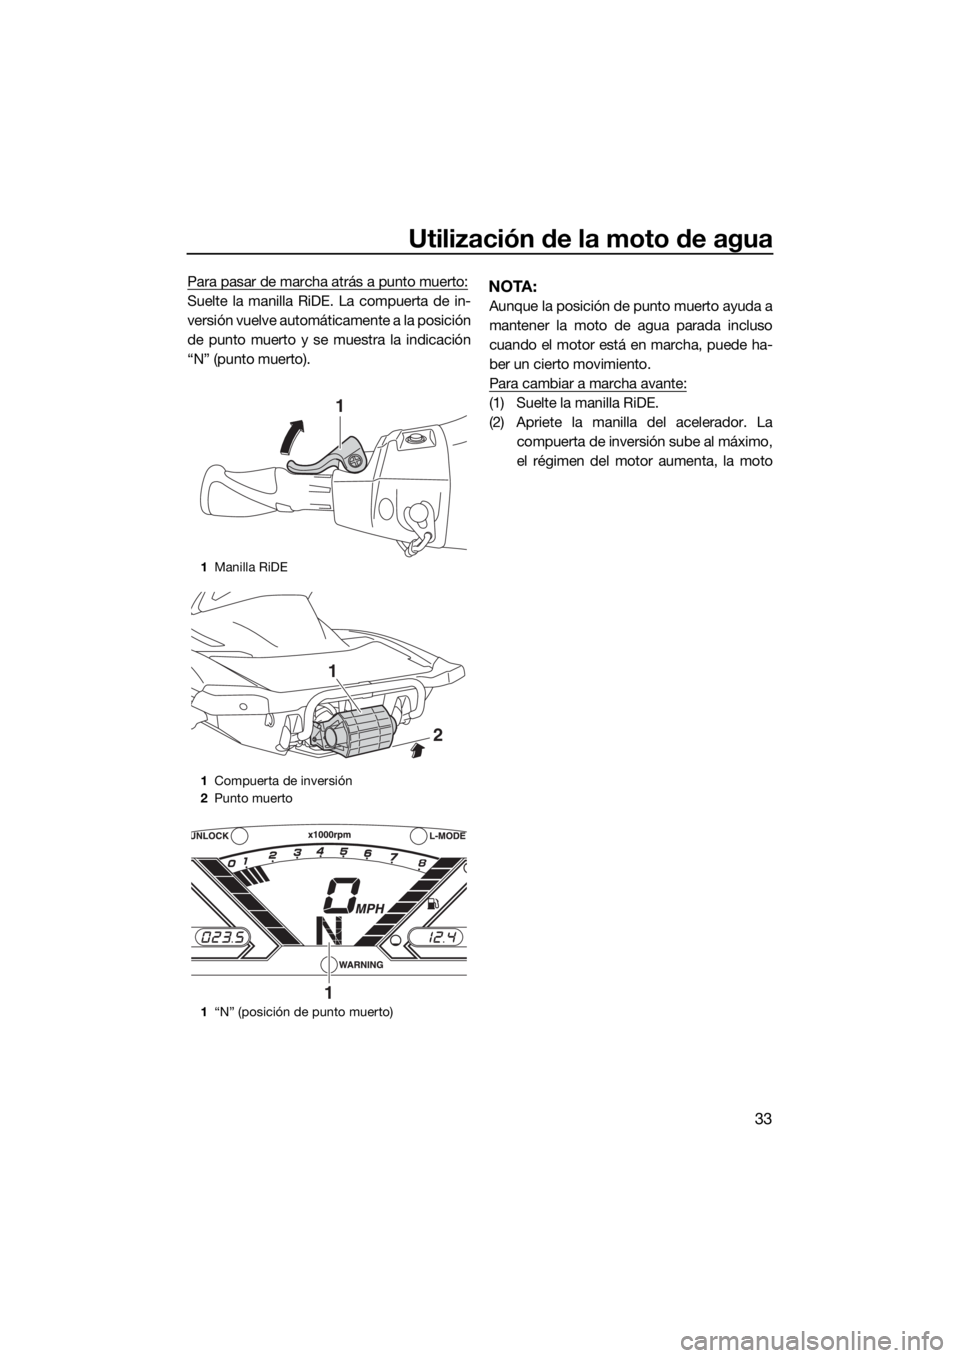 YAMAHA VX LIMITED 2019  Manuale de Empleo (in Spanish) Utilización de la moto de agua
33
Para pasar de marcha atrás a punto muerto:
Suelte la manilla RiDE. La compuerta de in-
versión vuelve automáticamente a la posición
de punto muerto y se muestra 